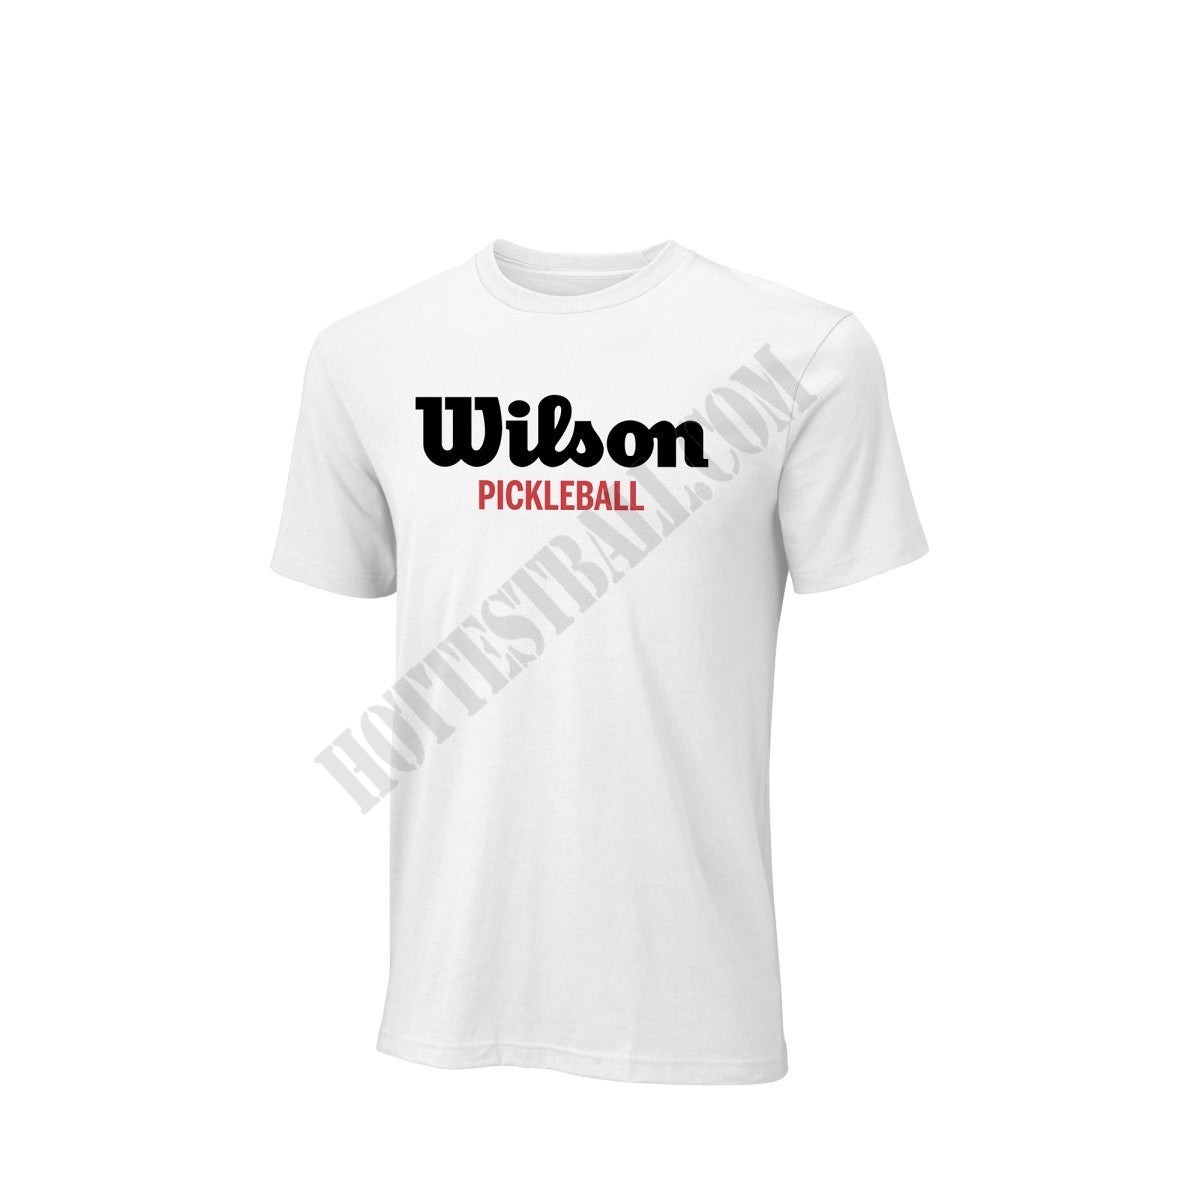 Men's Pickleball Script Tech T-shirt - Wilson Discount Store - Men's Pickleball Script Tech T-shirt - Wilson Discount Store